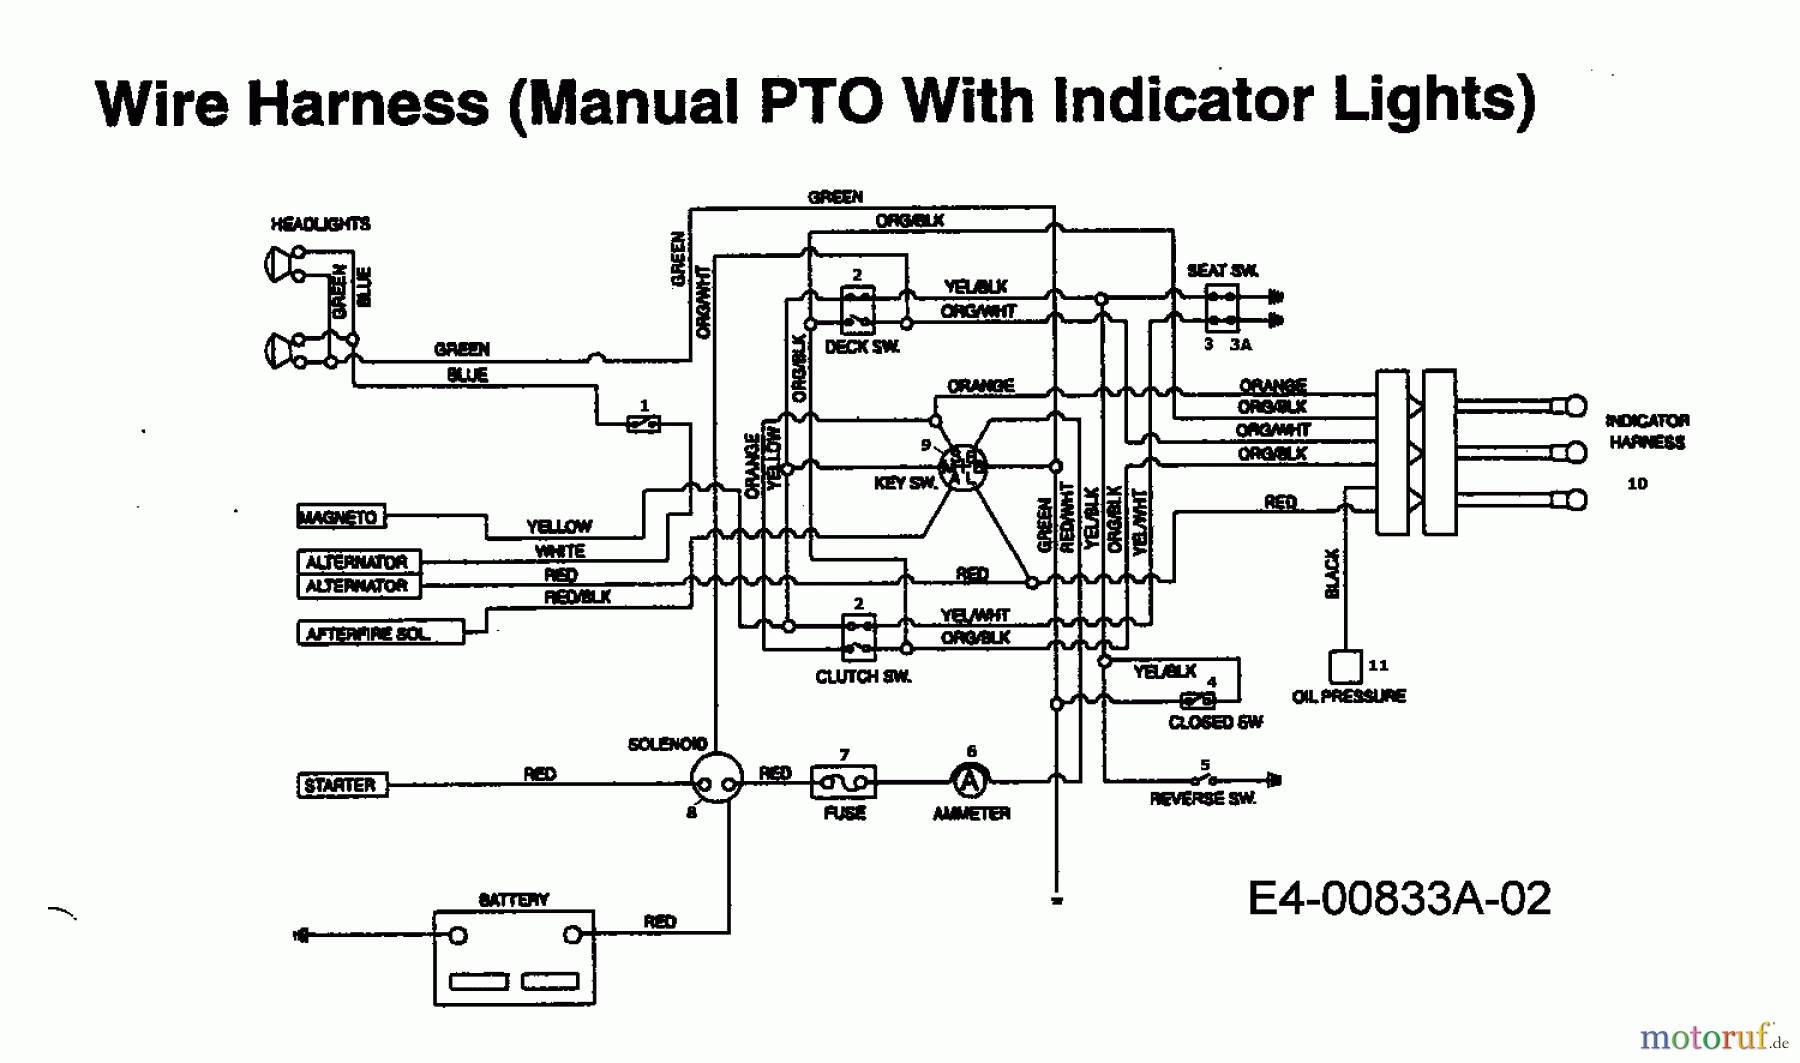  Edt Tracteurs de pelouse EDT 145 H-102 13CP793N610  (1999) Plan électrique avec lampe de contrôle